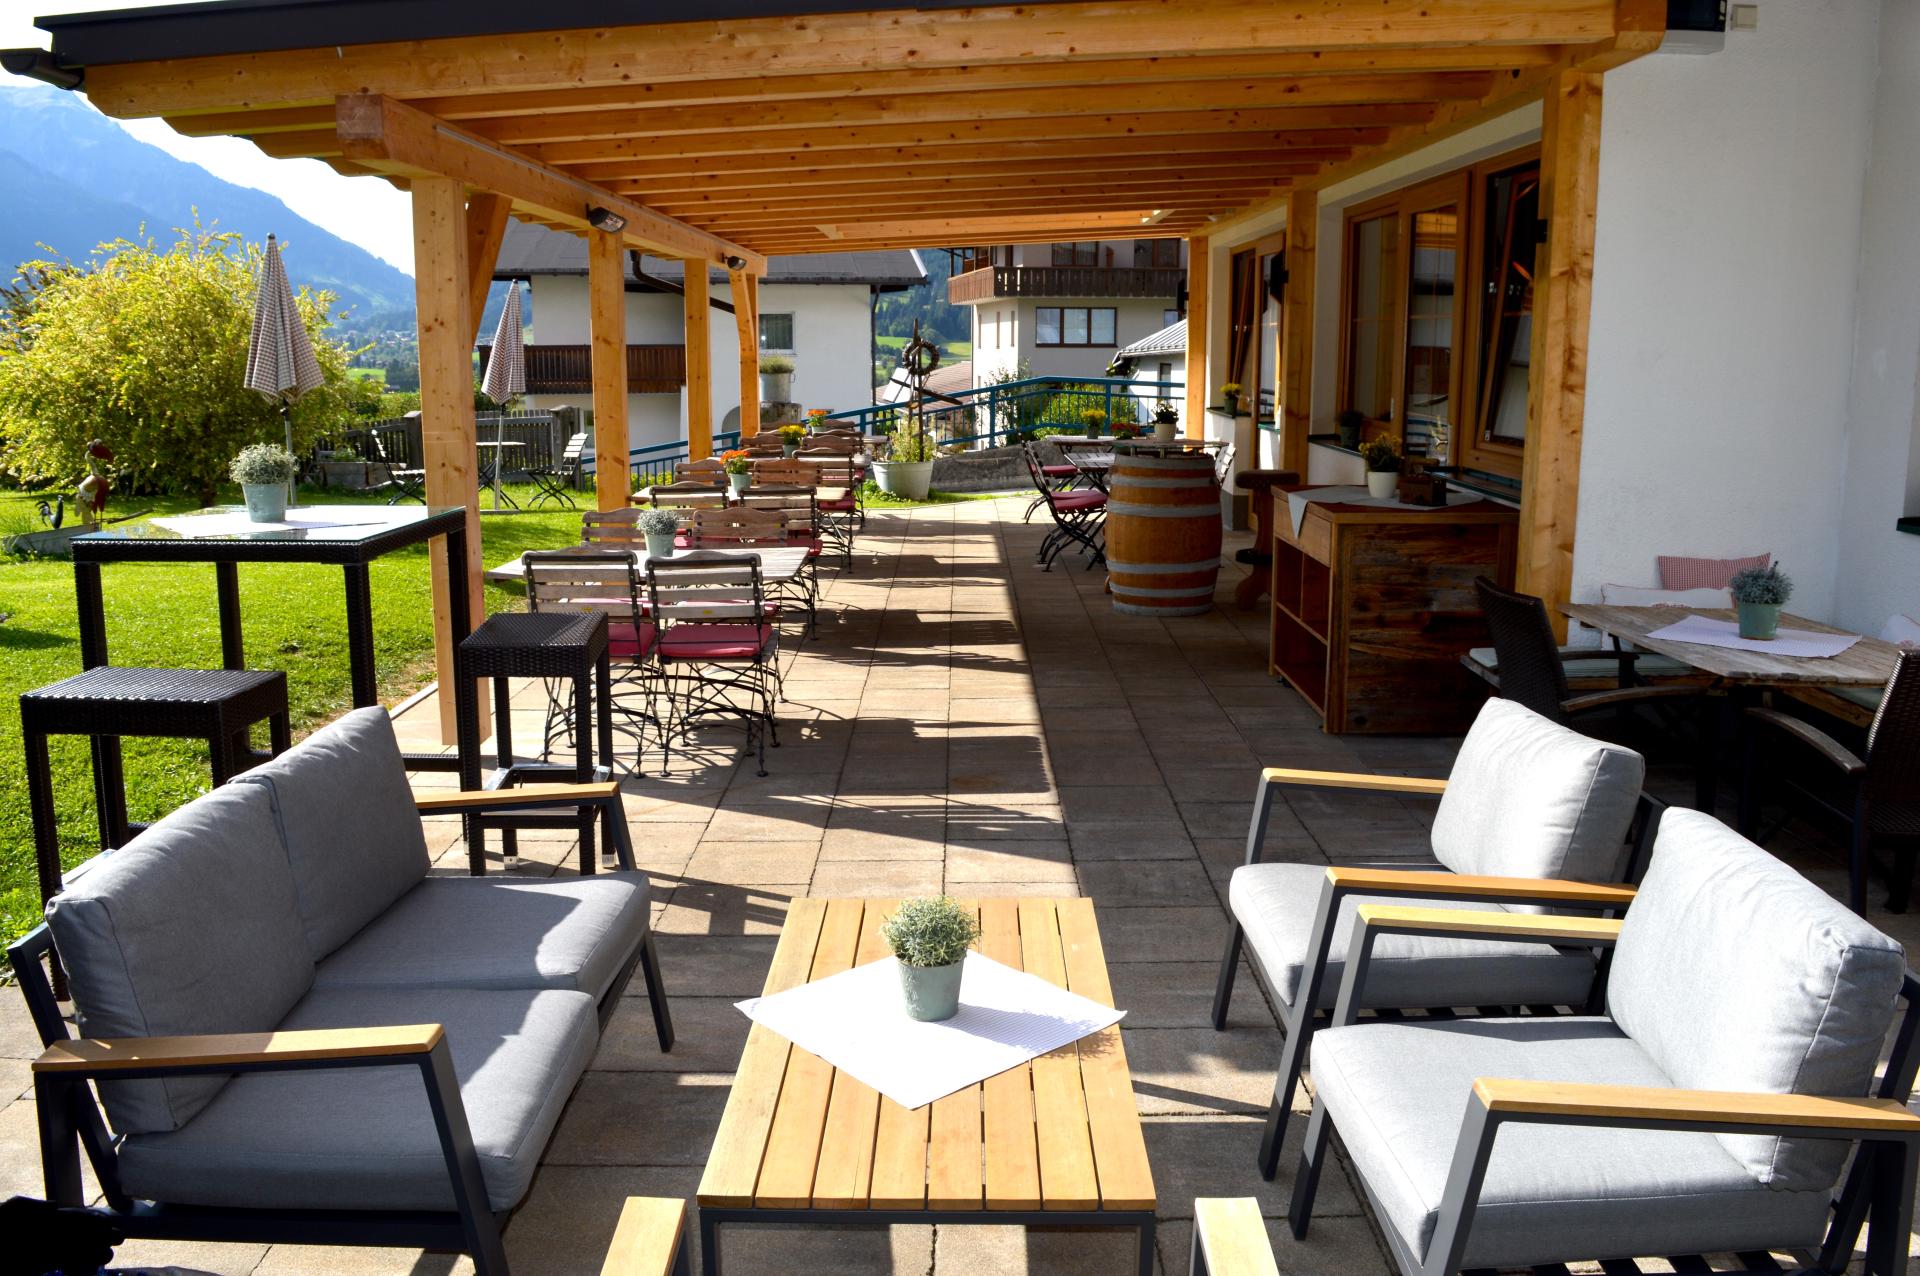 Zum Urviech #Willkommen#Restaurant#Wohneinheiten#Bildergalerie#Buchen#Impressum#Sitemap#Sommer in den Bergen